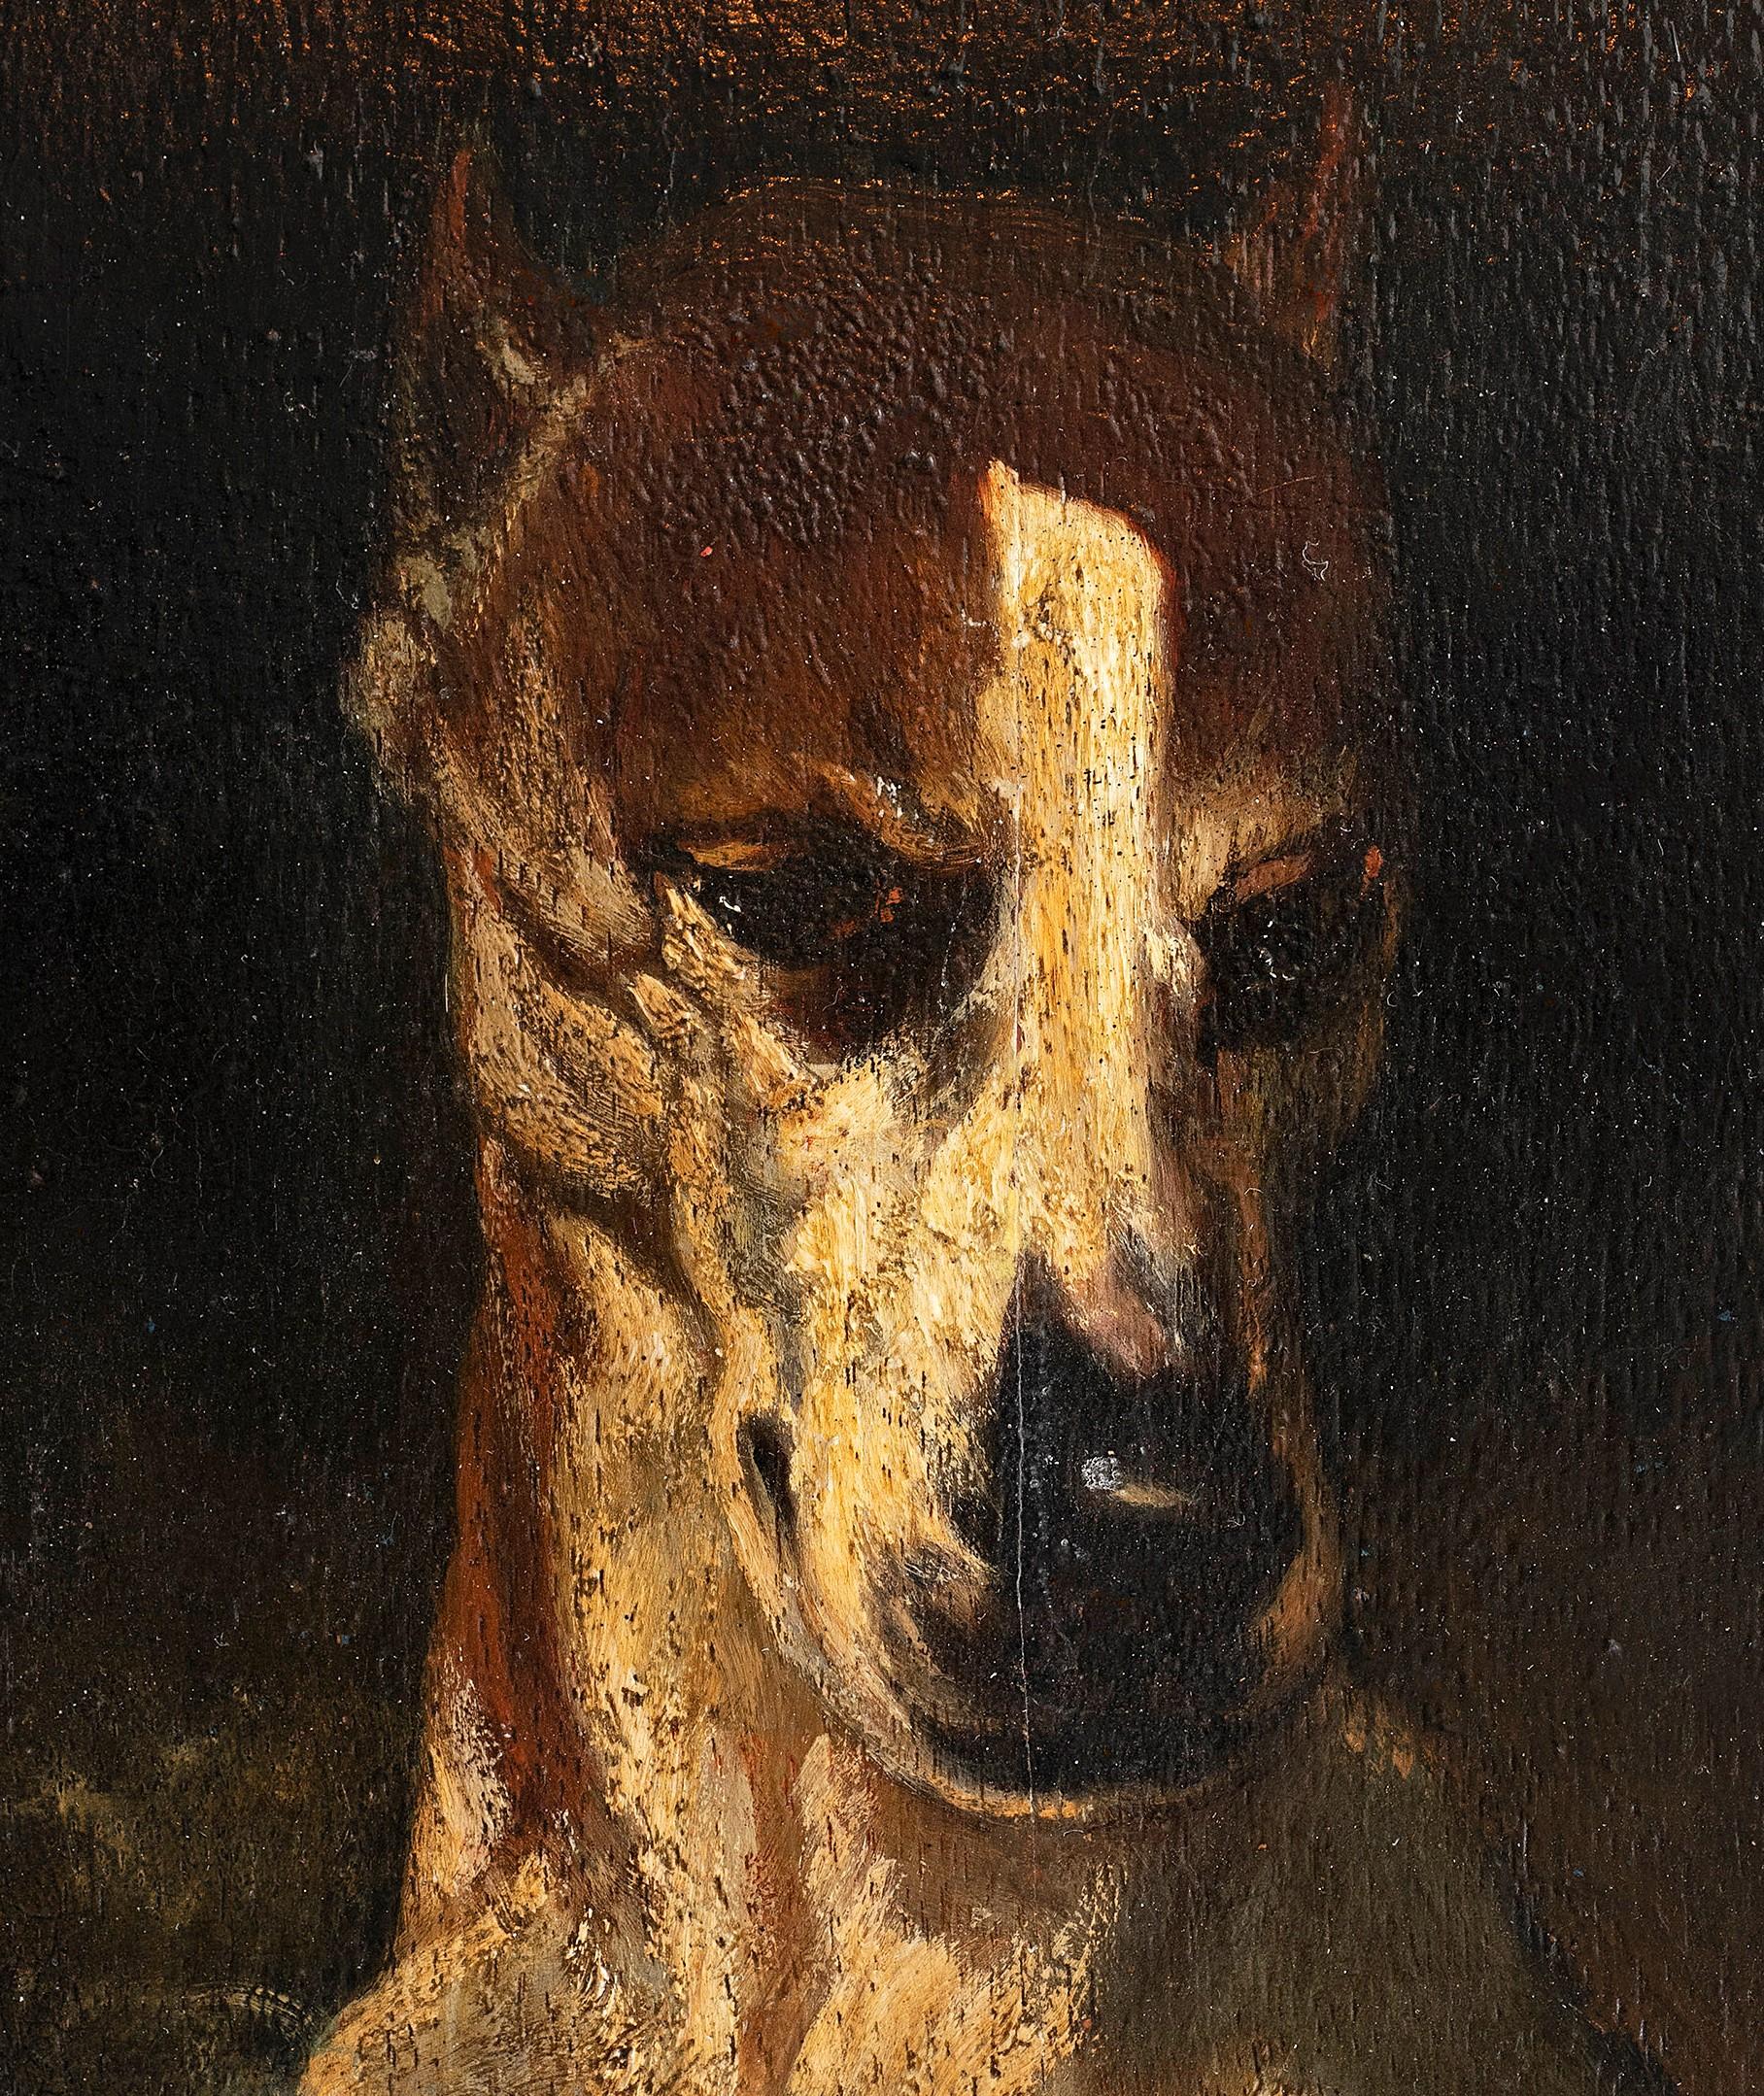 Antique Dog Portrait 